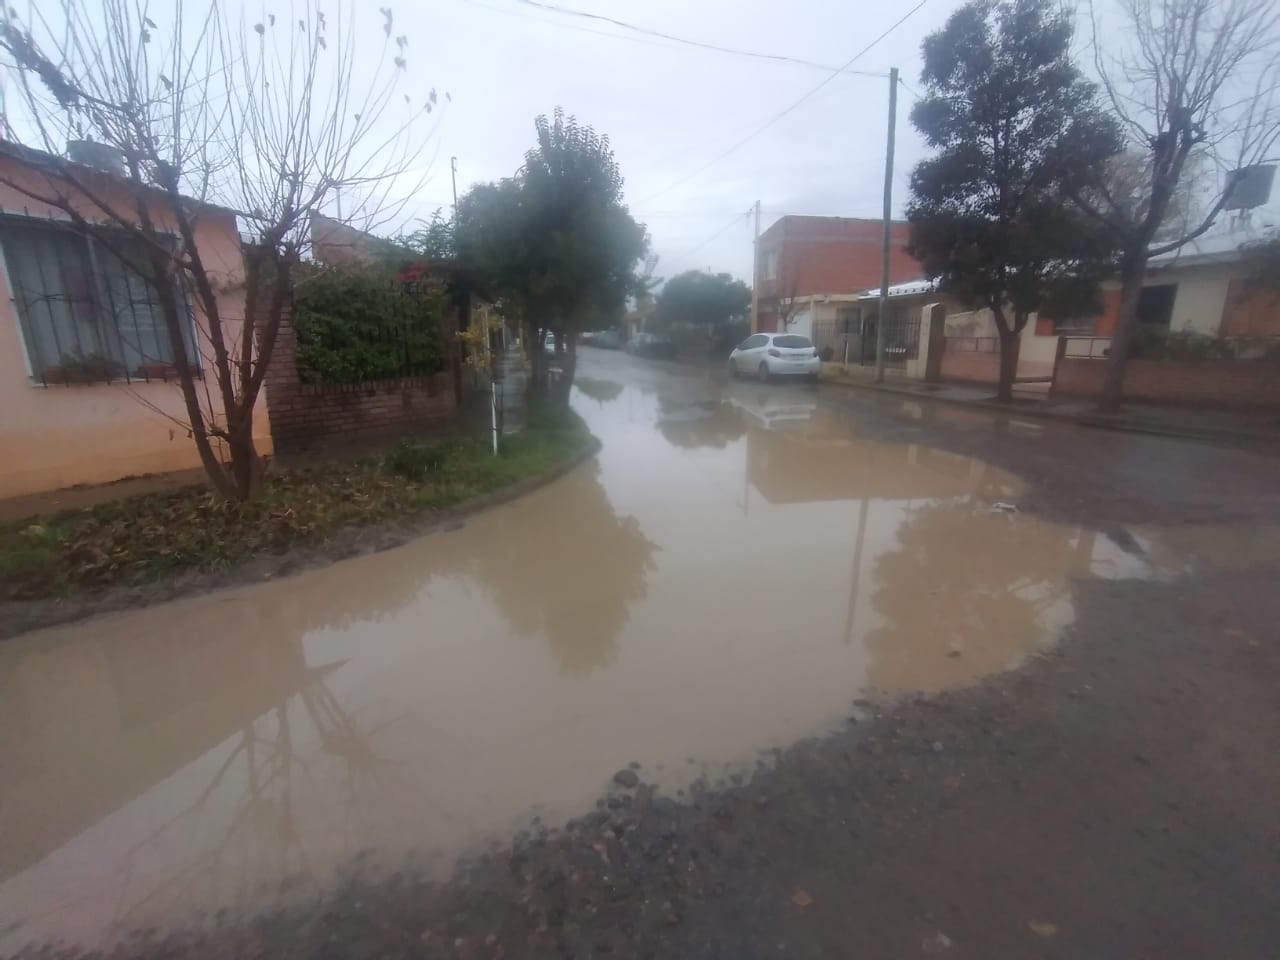 Solicitan un arreglo a la inundación de la calle en barrio CGT